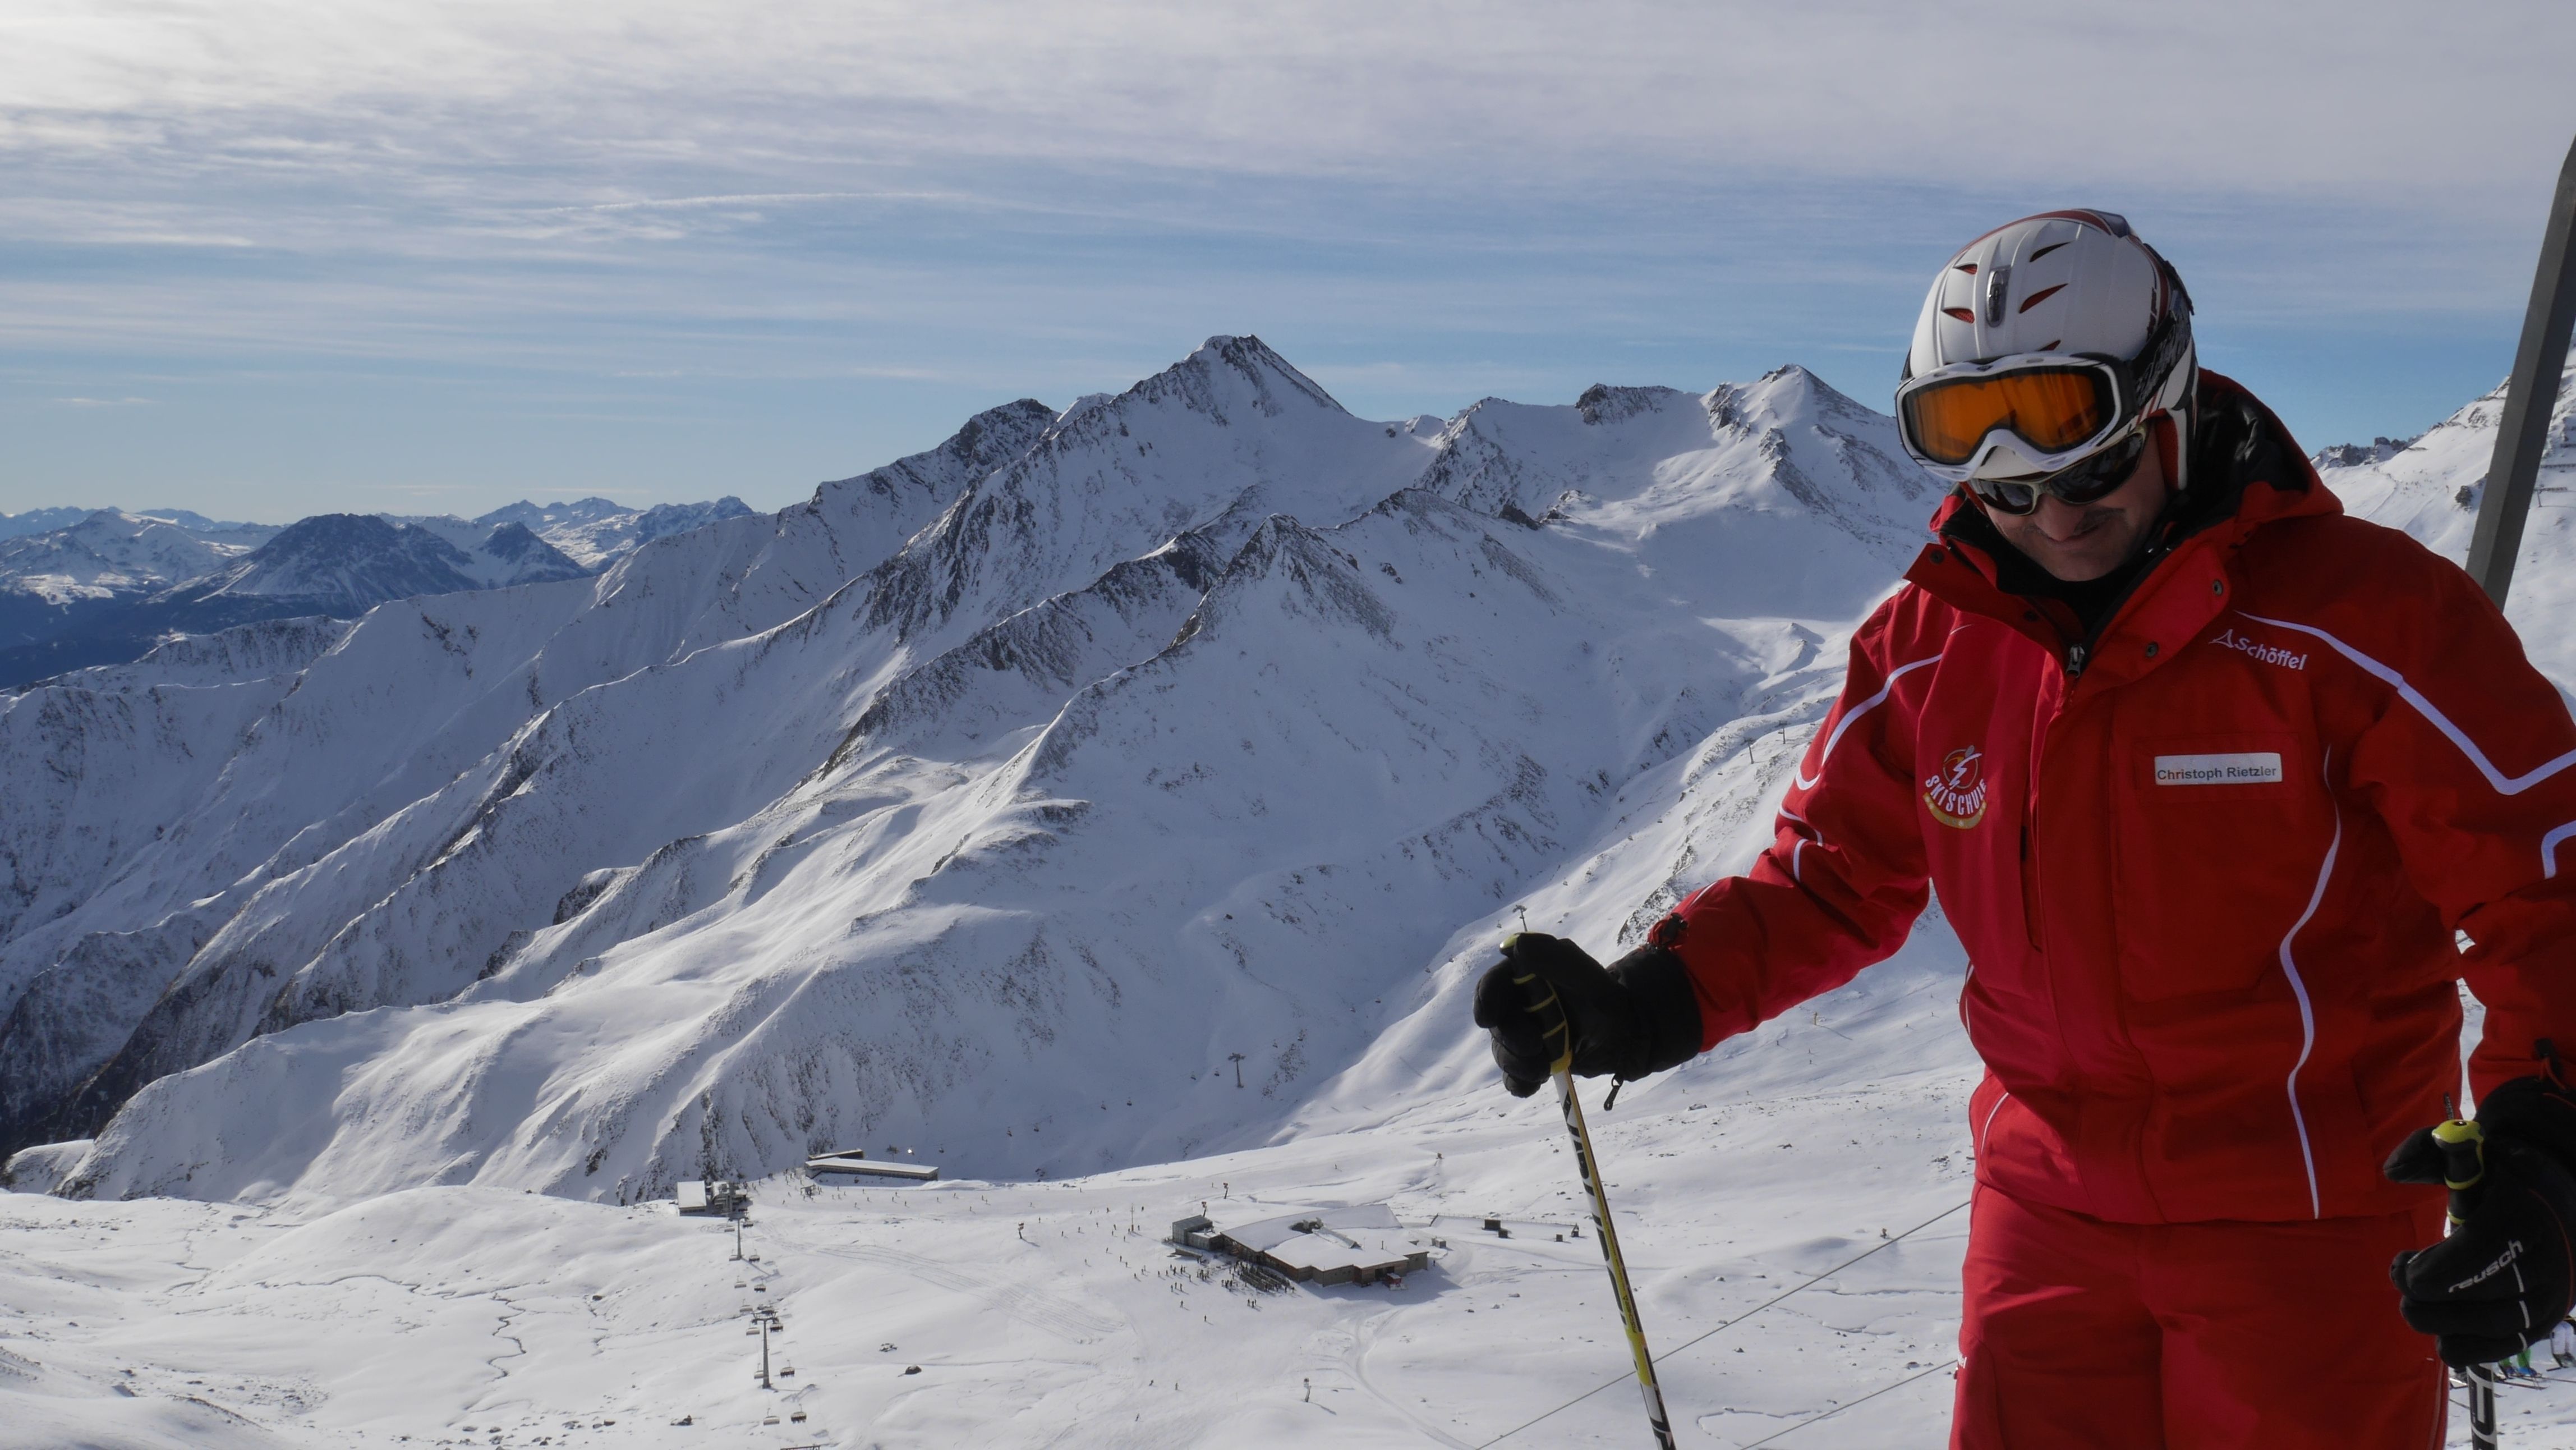 ontgrendelen Netto Kinderpaleis De skileraren bubble - Wintersport weblog